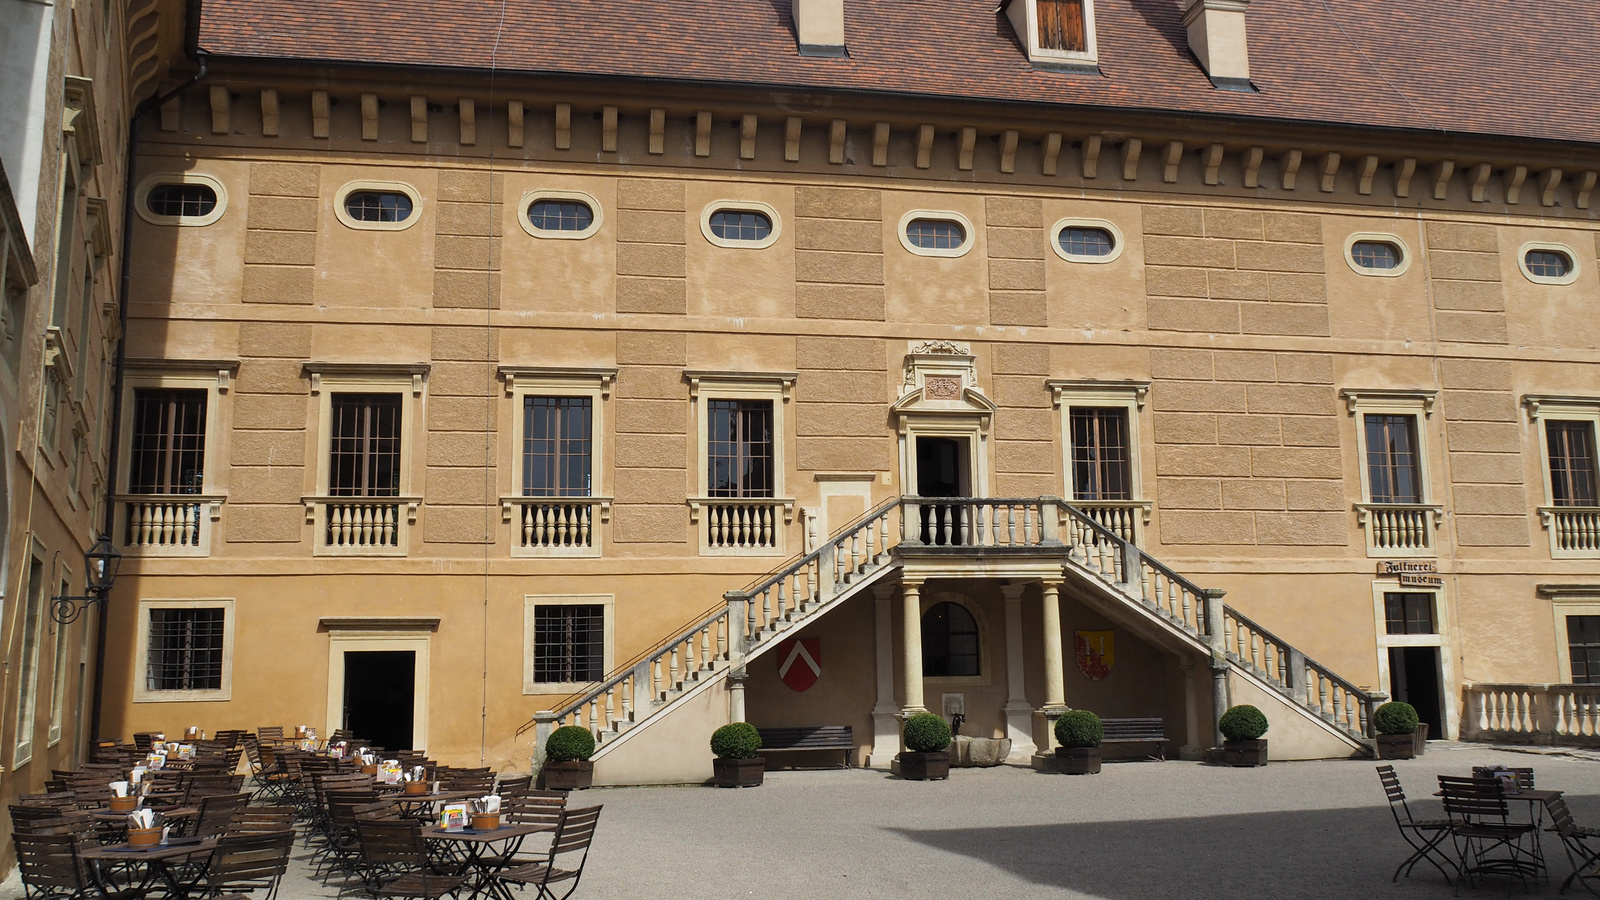 Ausztria, Renaissanceschloss Rosenburg, SzG3